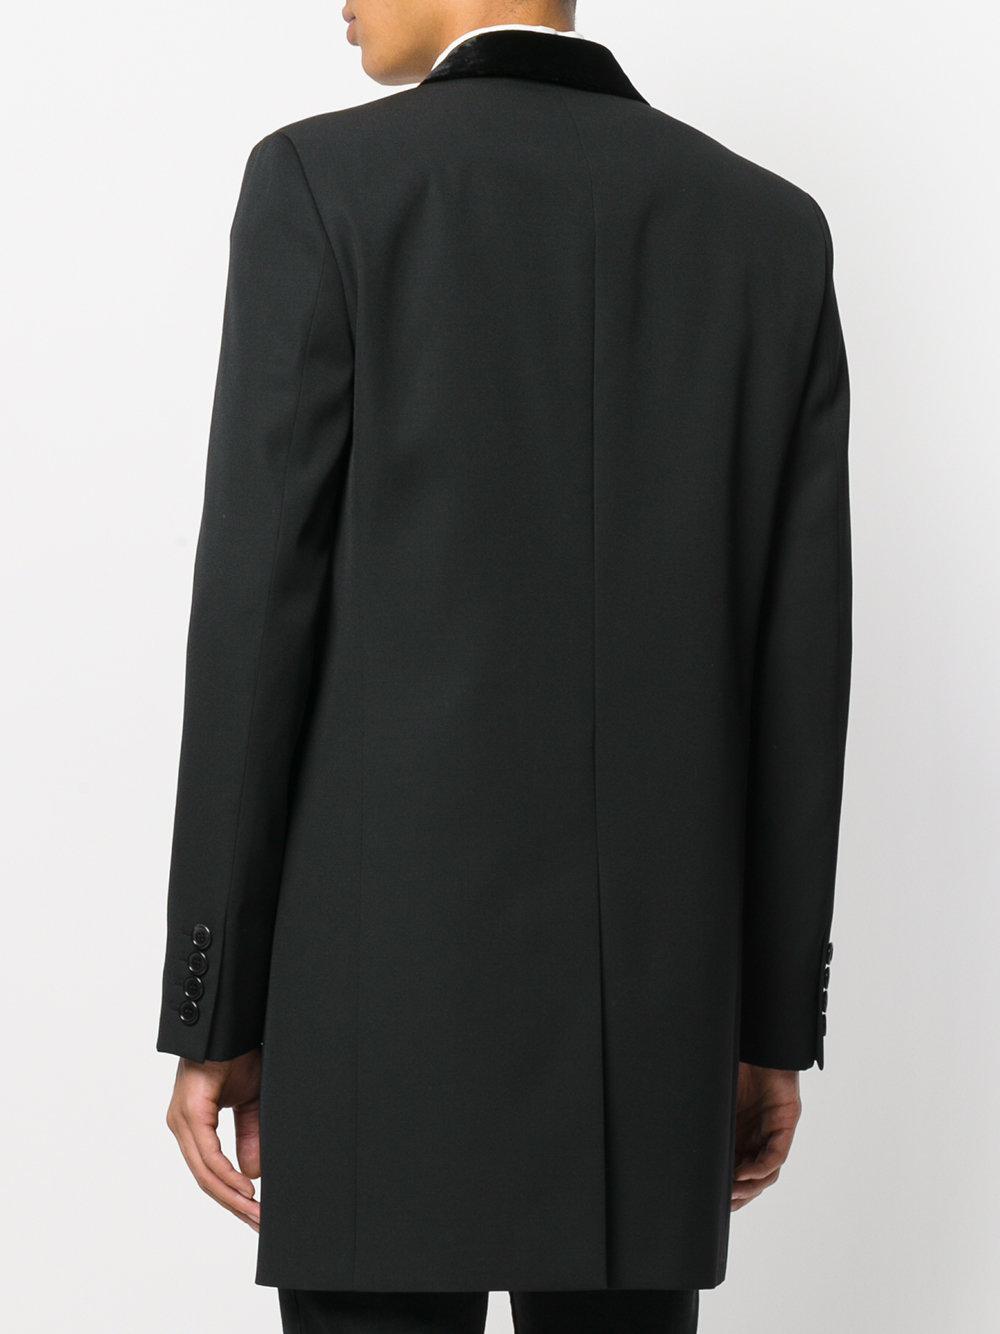 Saint Laurent Velvet Collar Chesterfield Coat in Black for Men - Lyst